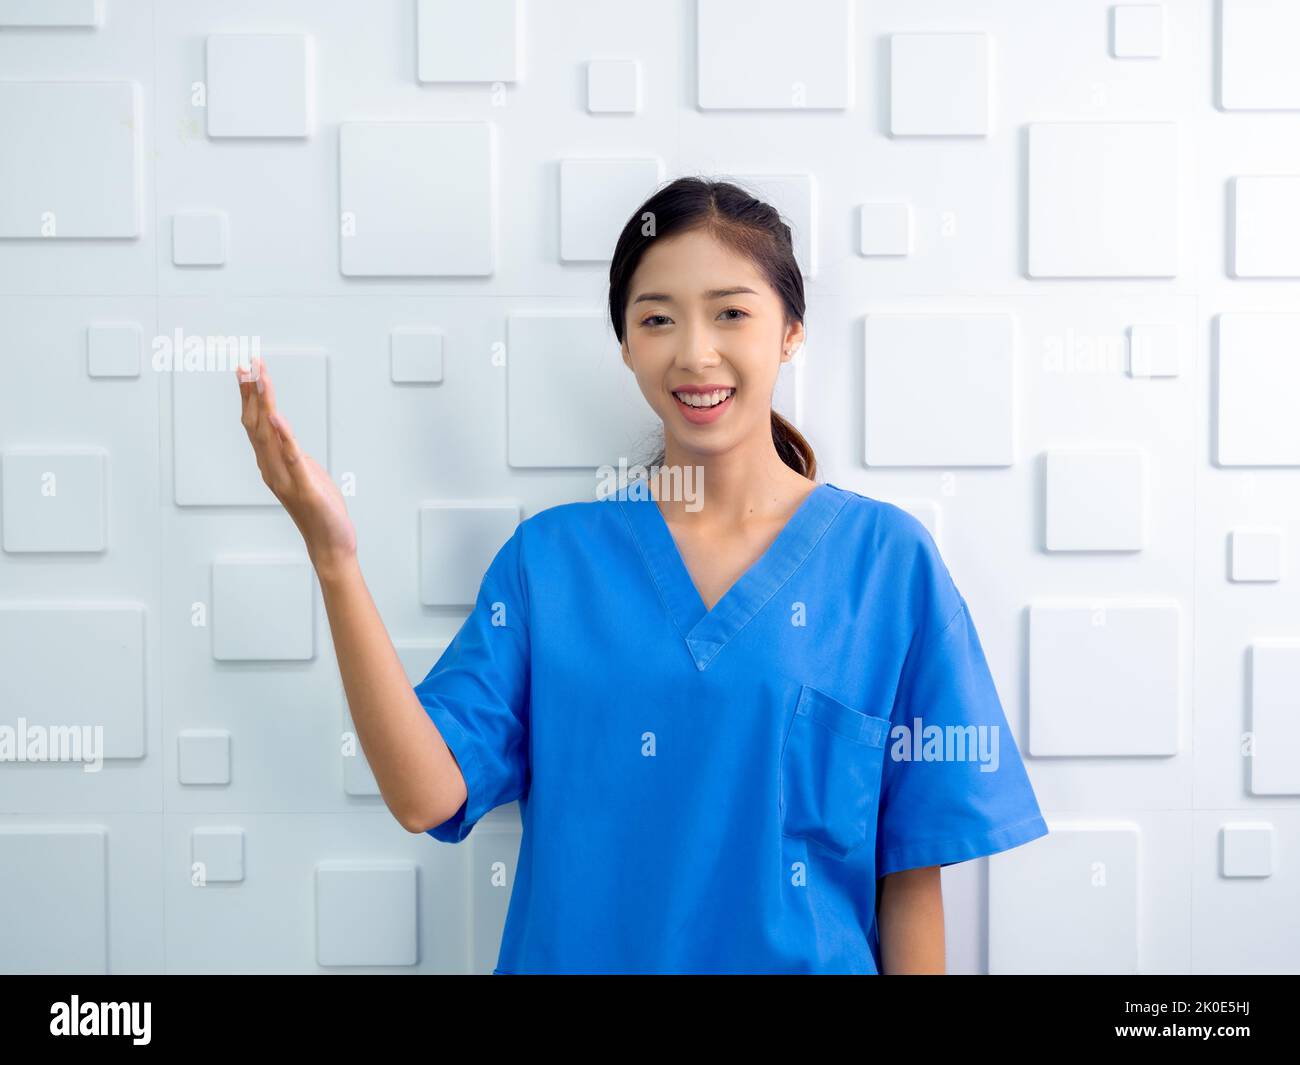 Ritratto di amichevole, allegro, sorriso fiducioso medico asiatico donna o infermiera facendo gesto esplicativo con la mano su sfondo bianco, guardando ca Foto Stock